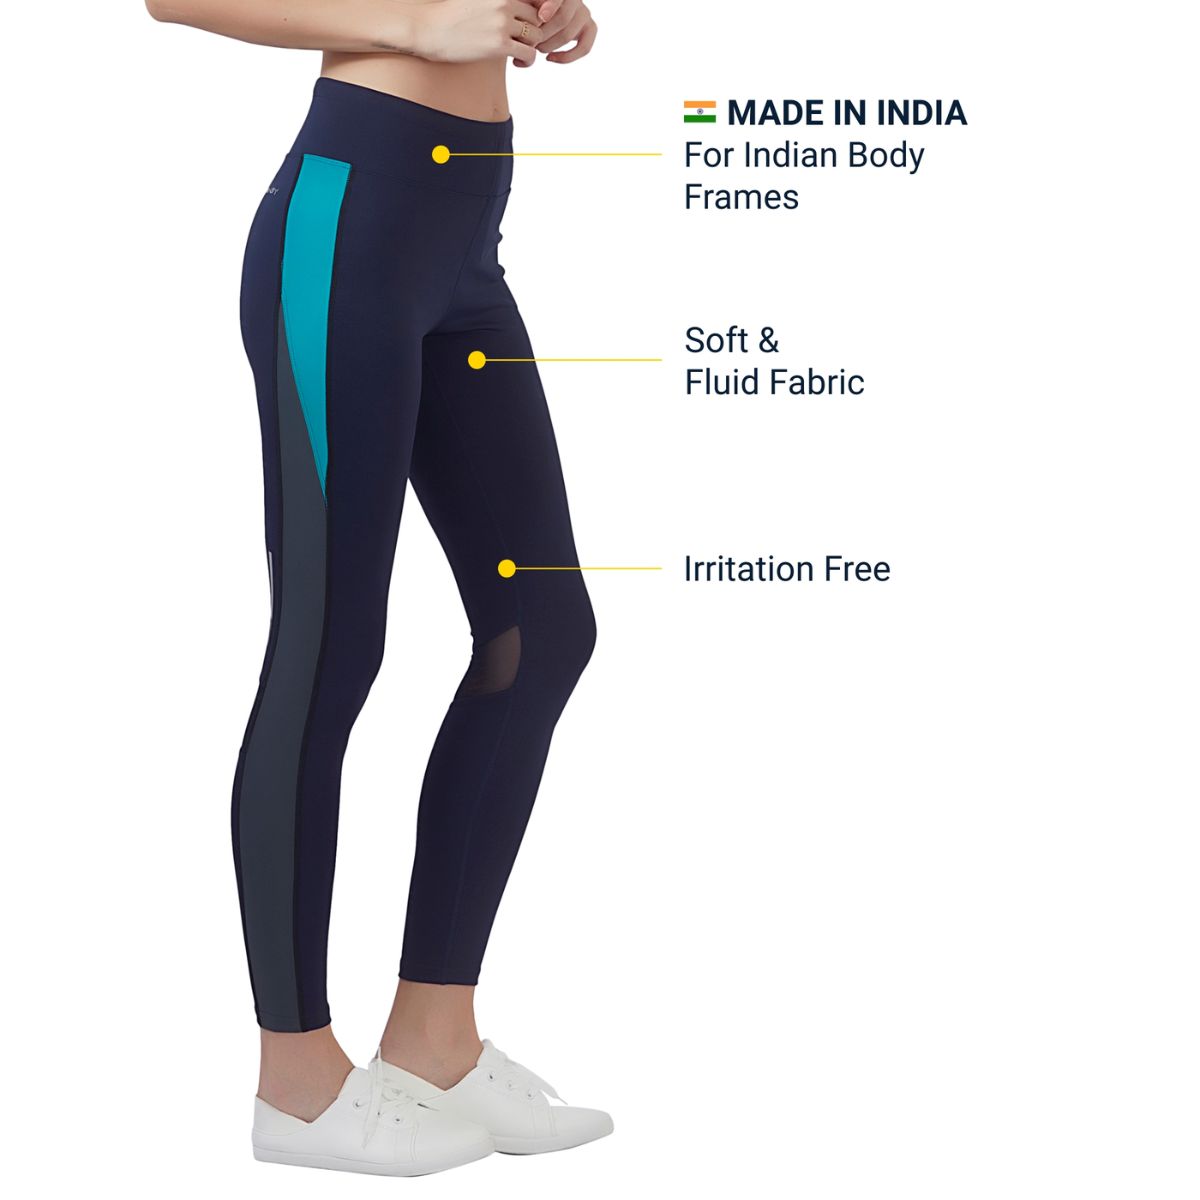 Women Fitness Wear - Sports Legging - The Boost - Full Length 4